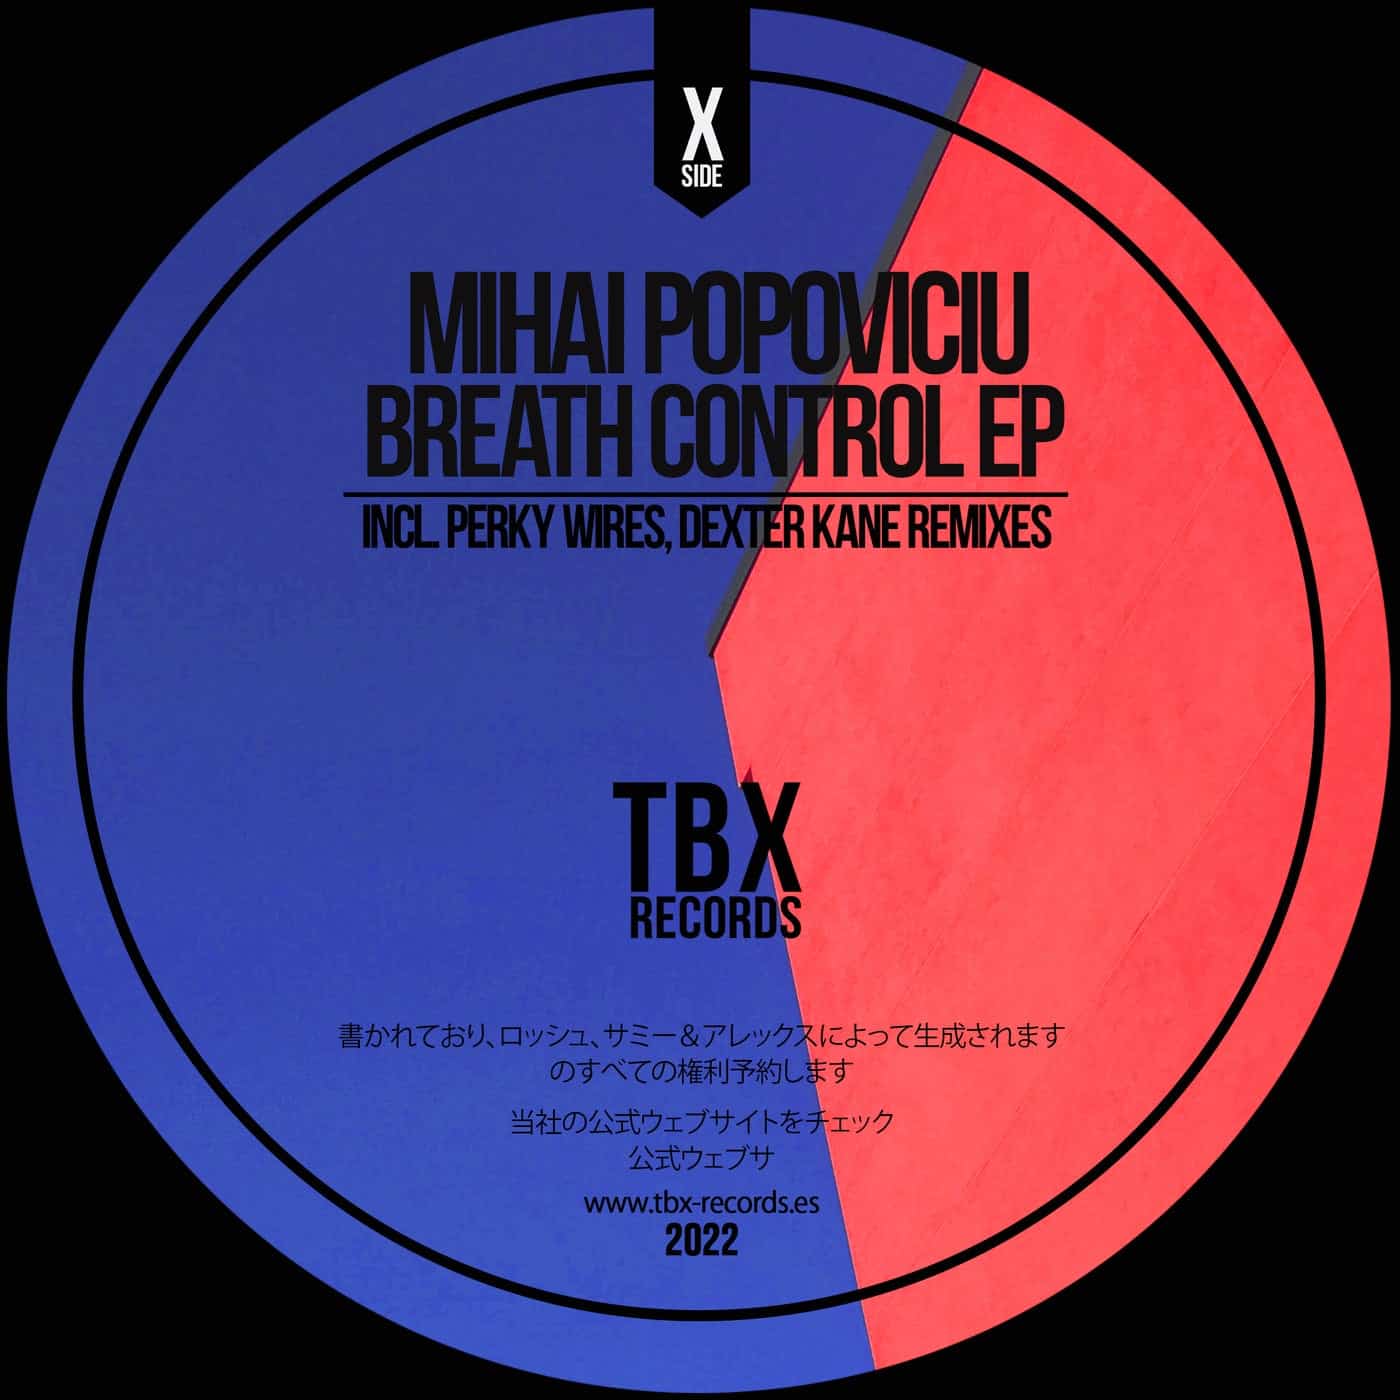 image cover: Mihai Popoviciu - Breath Control EP / TBX33